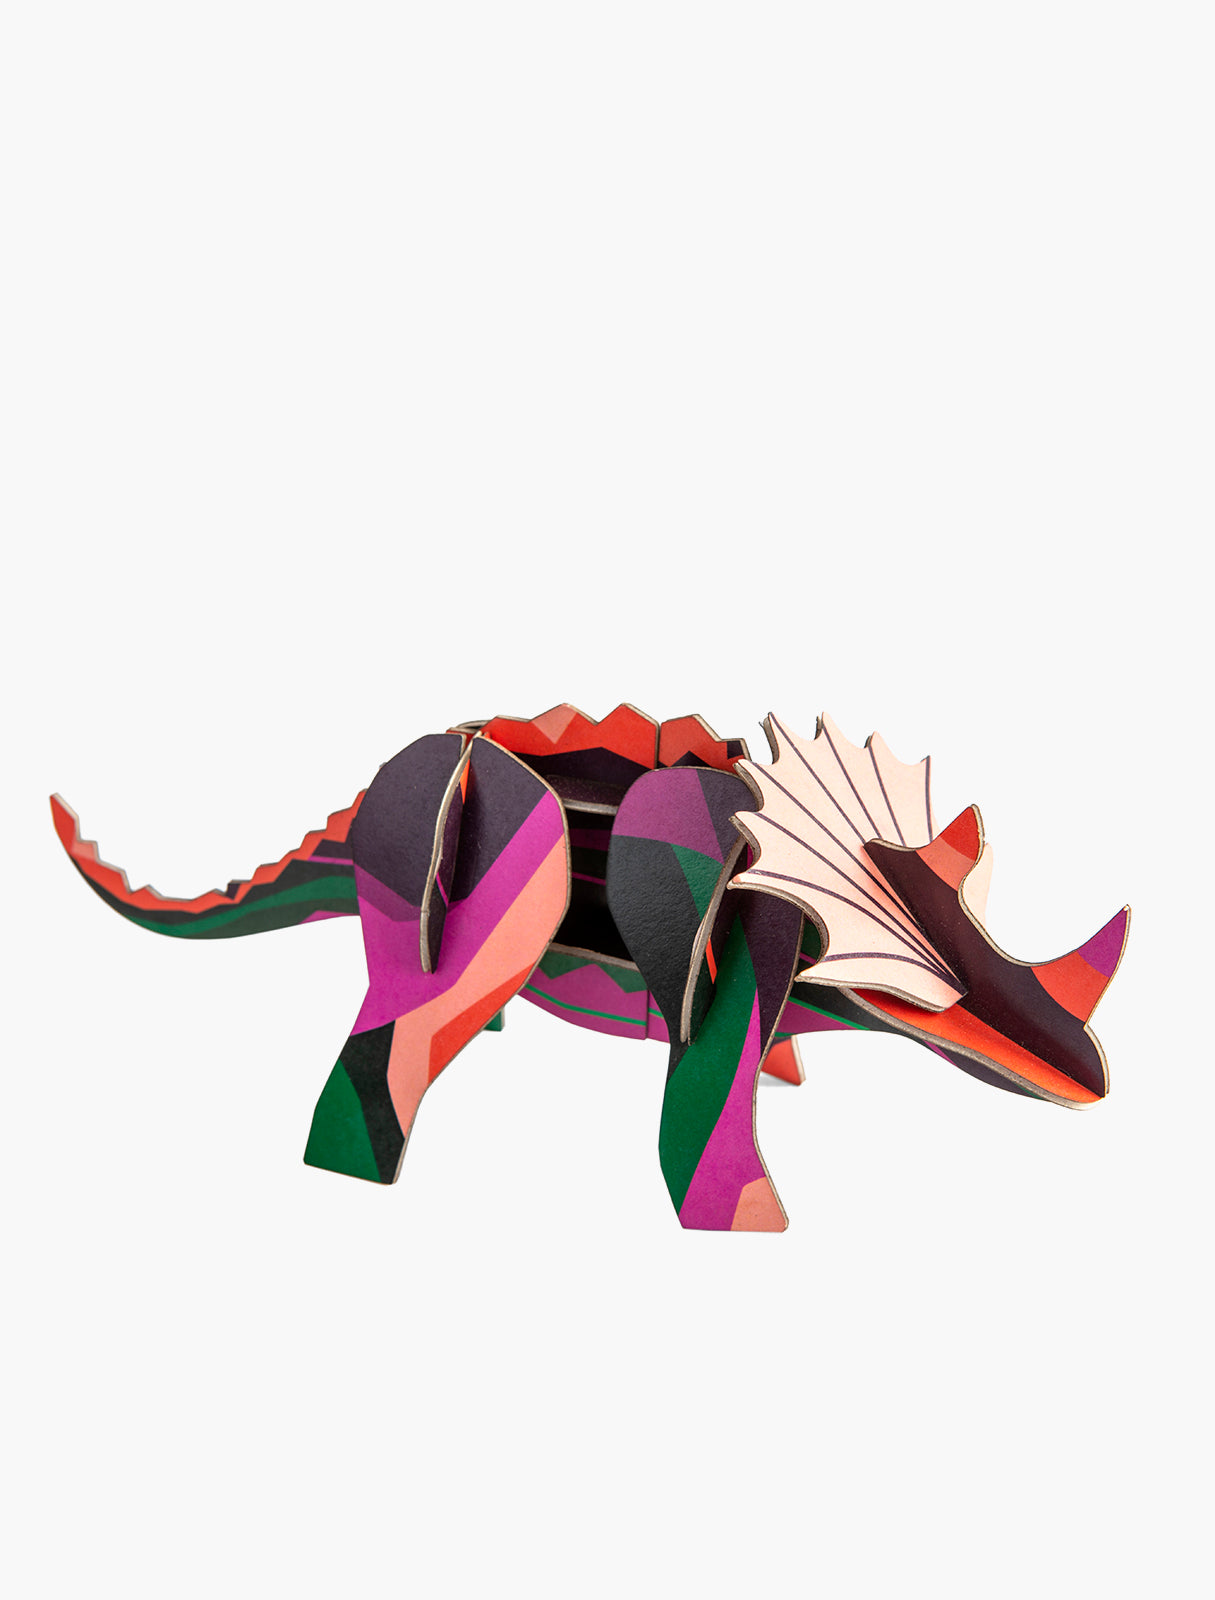 Triceraptops, dinosaure en carton recyclé à assembler - Studio Roof